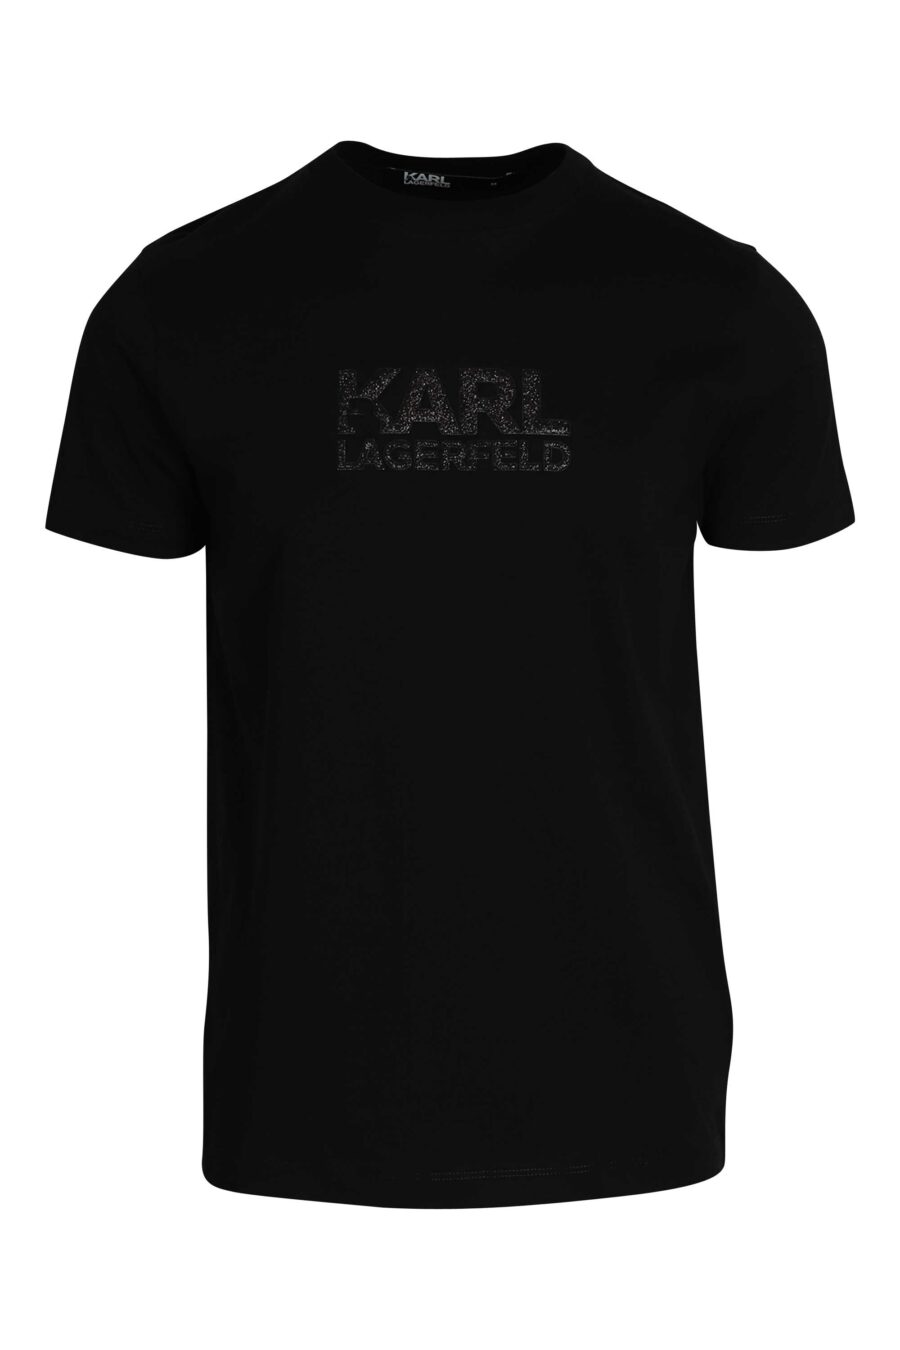 Black T-shirt with shiny black maxilogue - 014543001